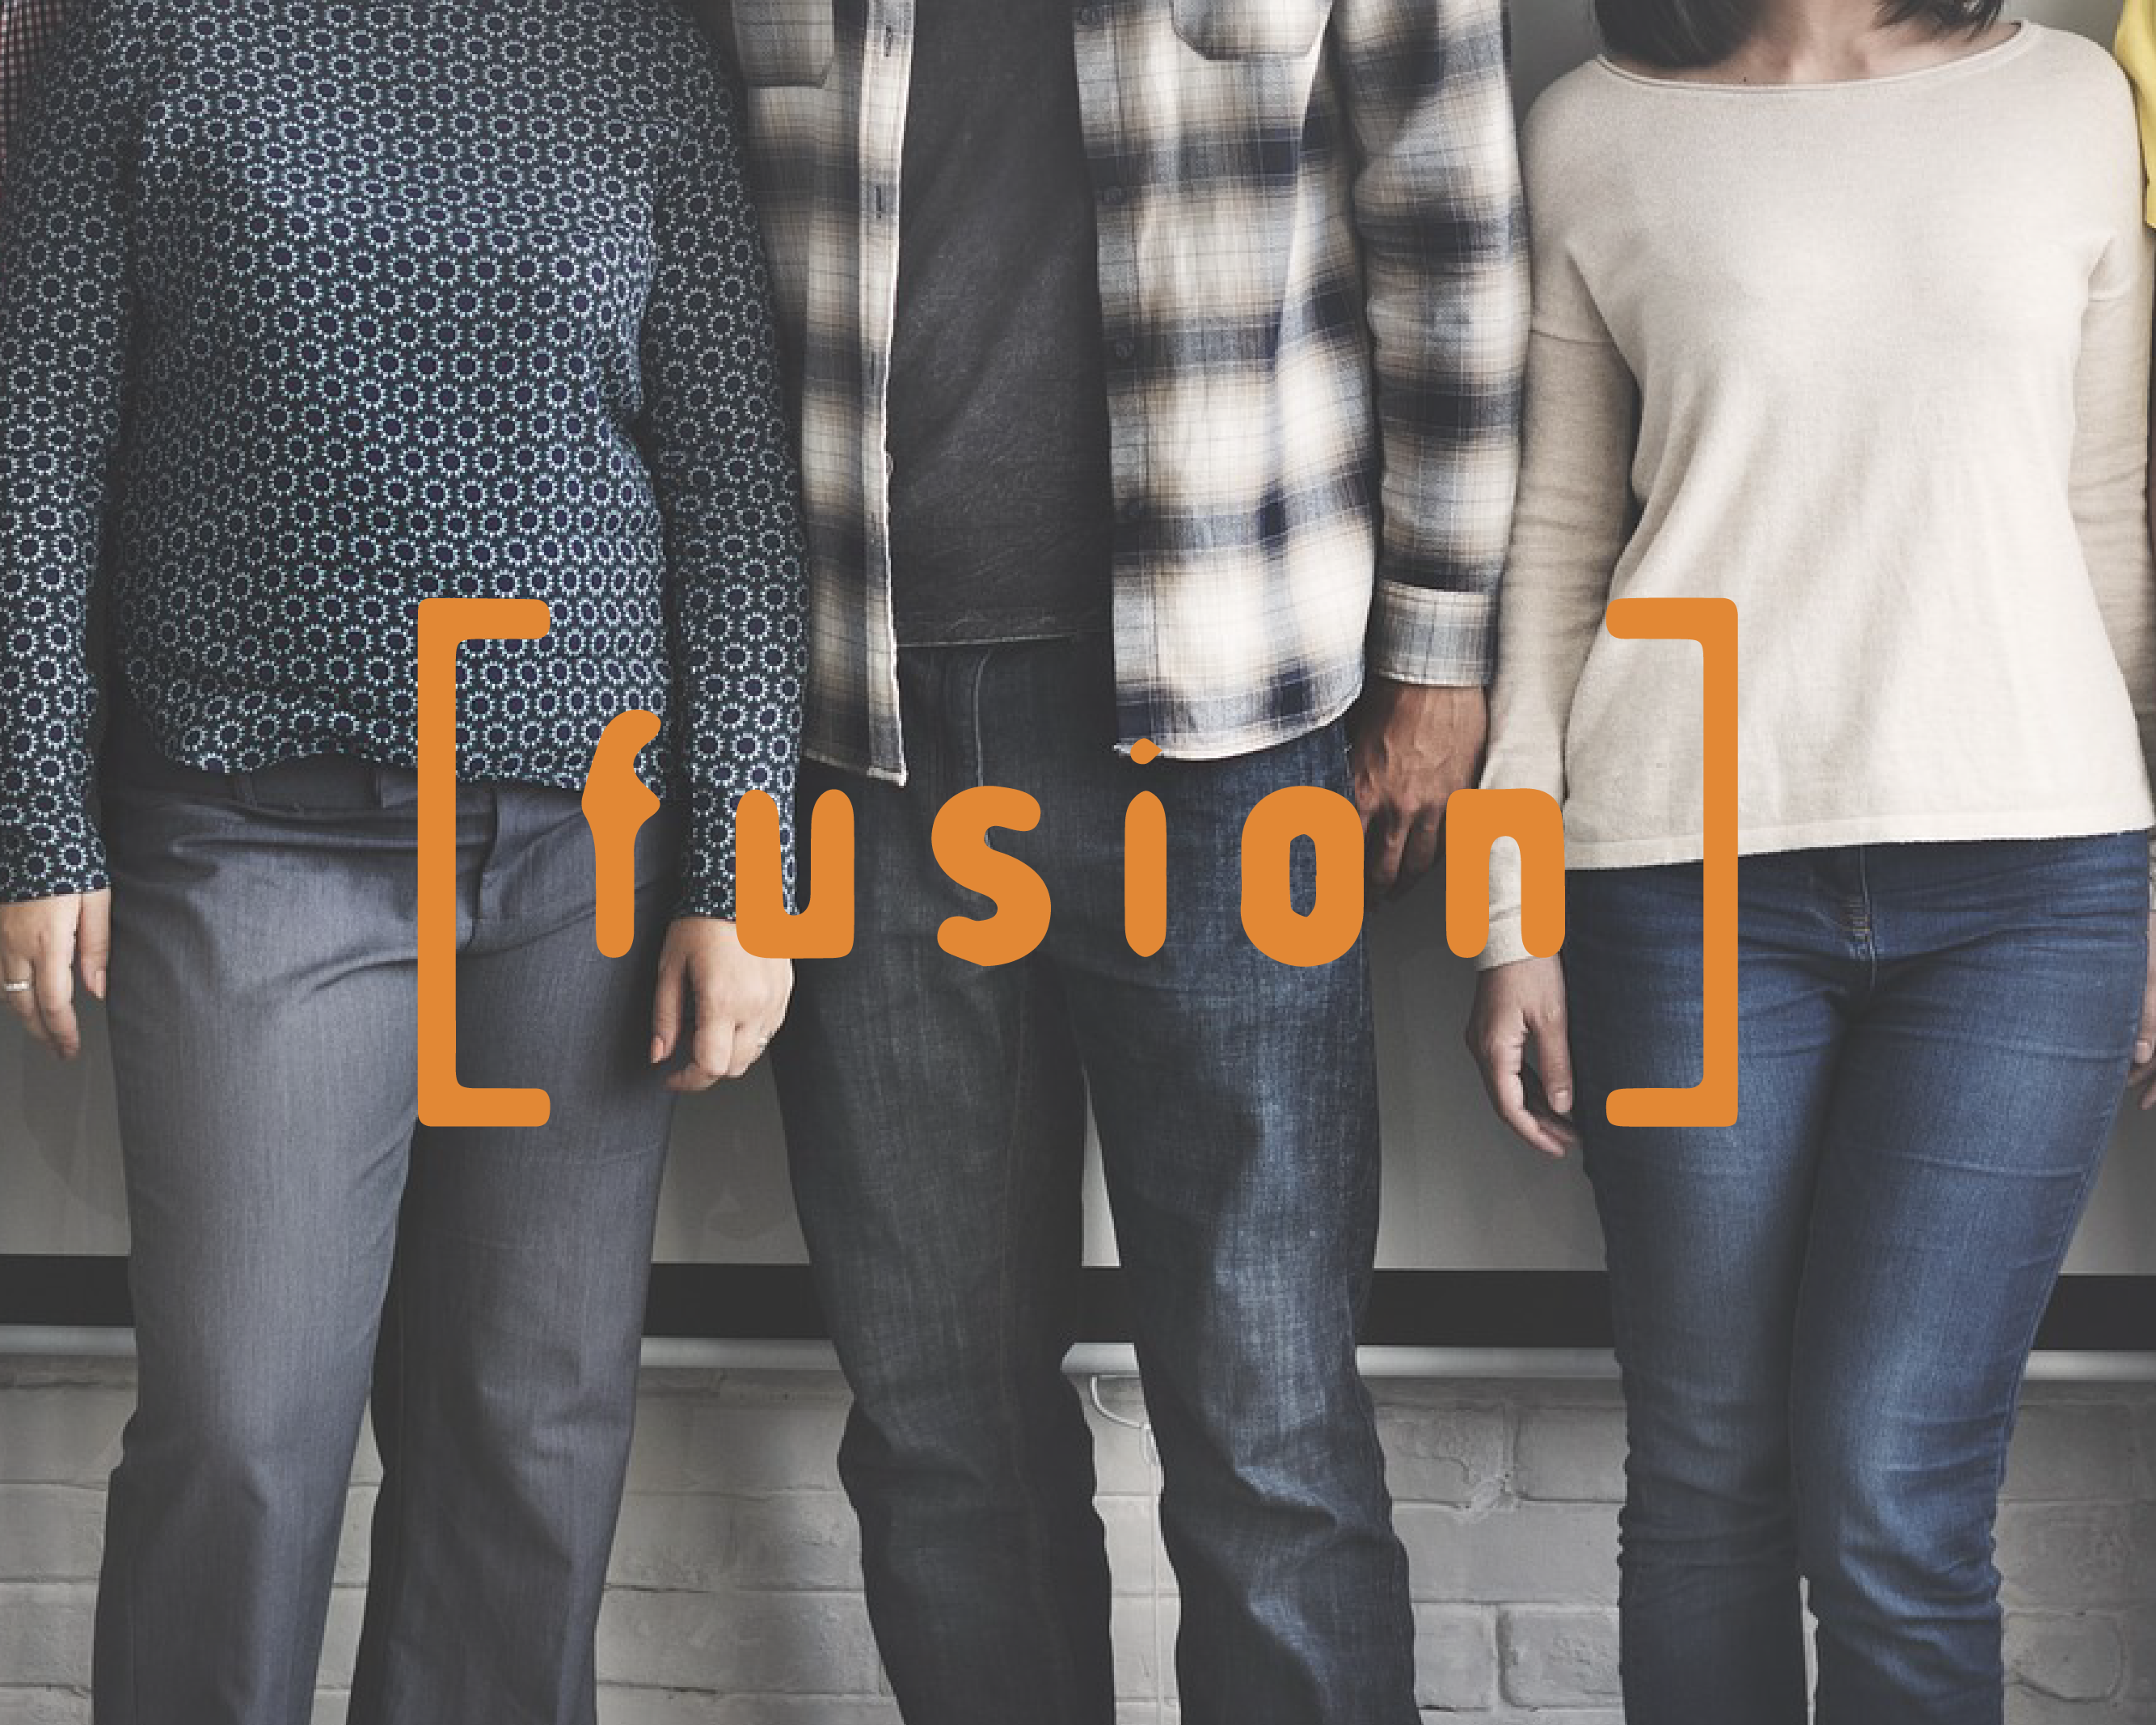 Fusion – World Mission